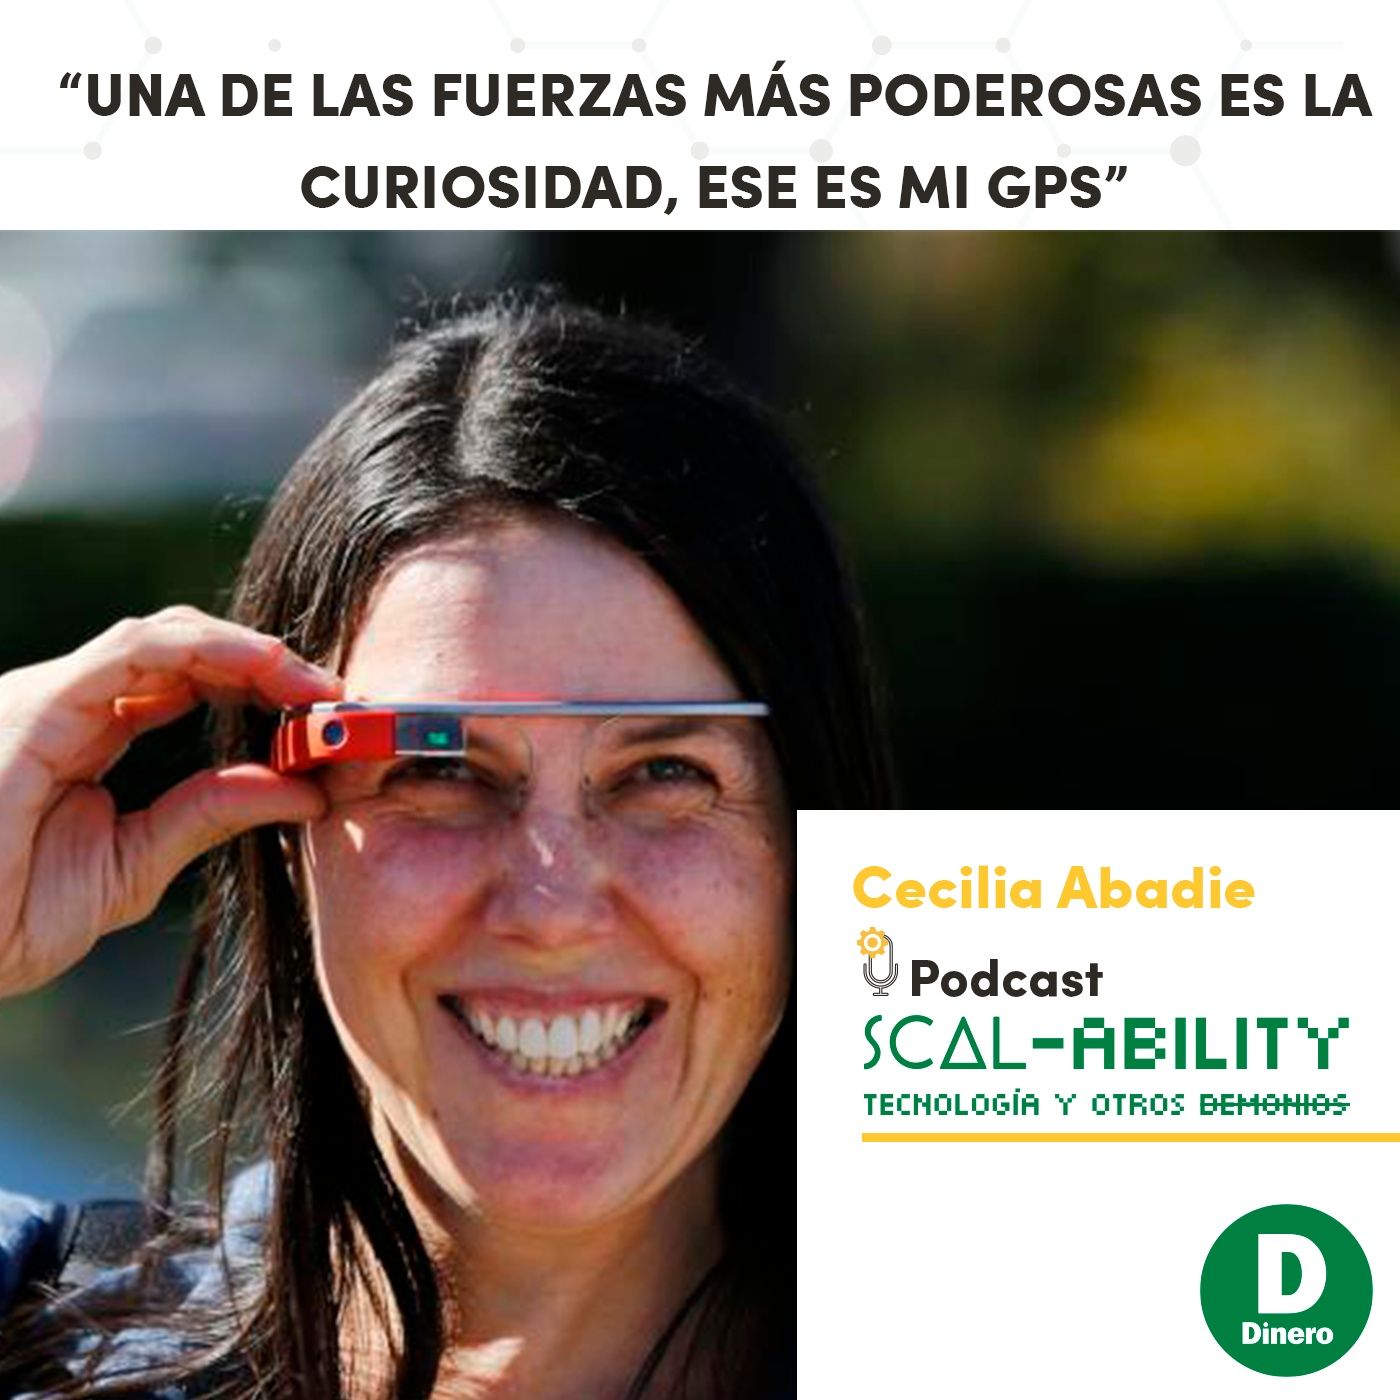 “Una de las fuerzas más poderosas es la curiosidad, ese es mi GPS”: Cecilia Abadie, Program Manager con Google Glass